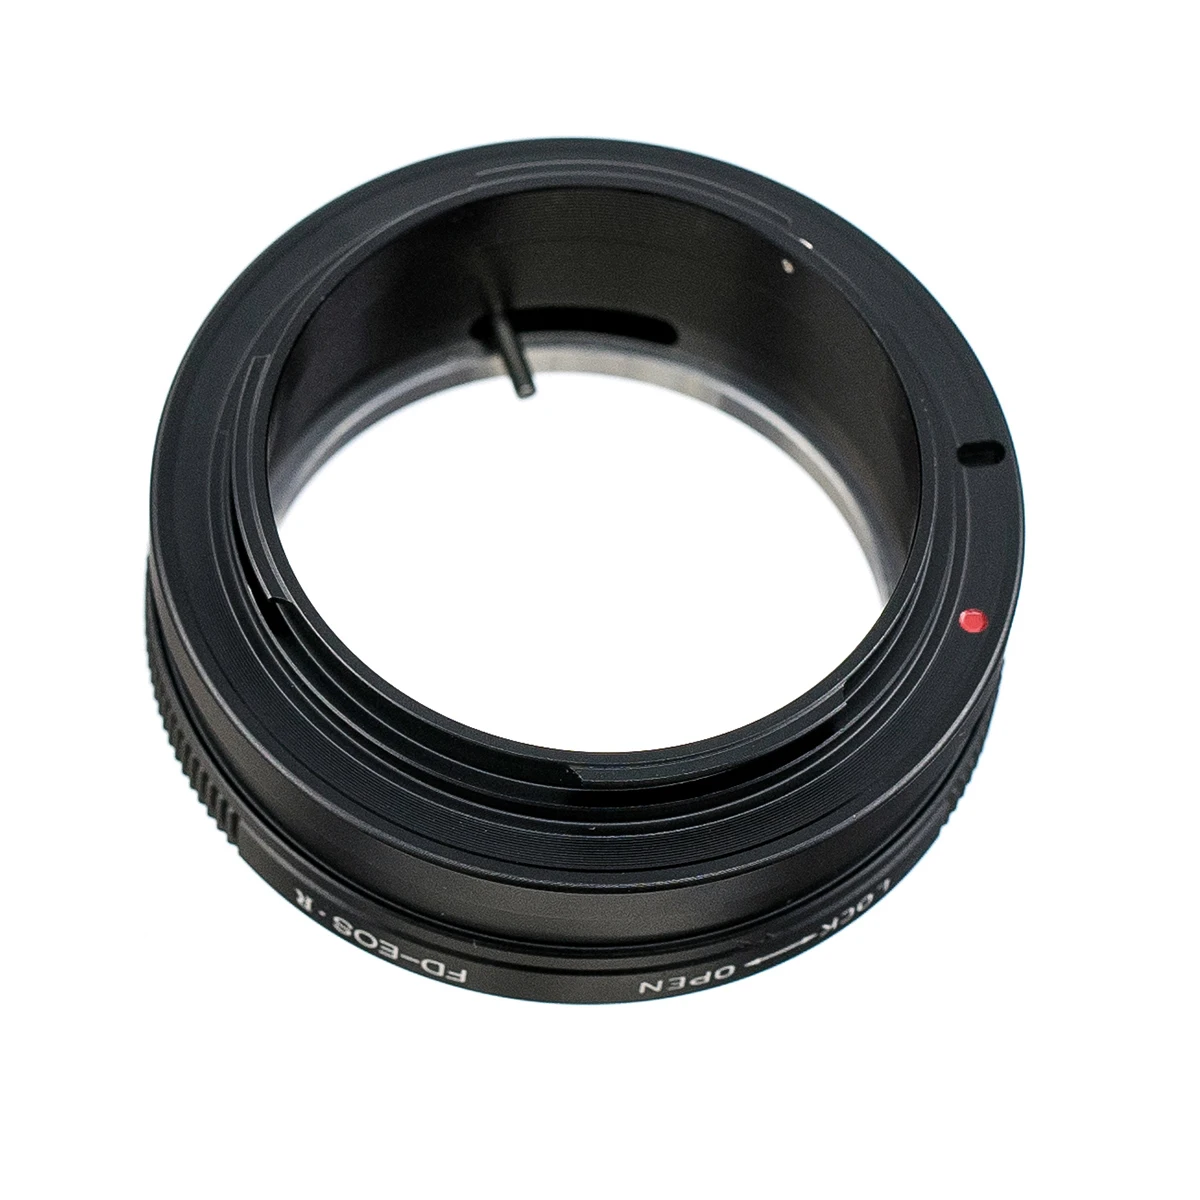 Fd Eosr Lens Adapter Ring For Fd Lens To Canon Eosr Eosrp Rf Mount Full Frame Camera Axel